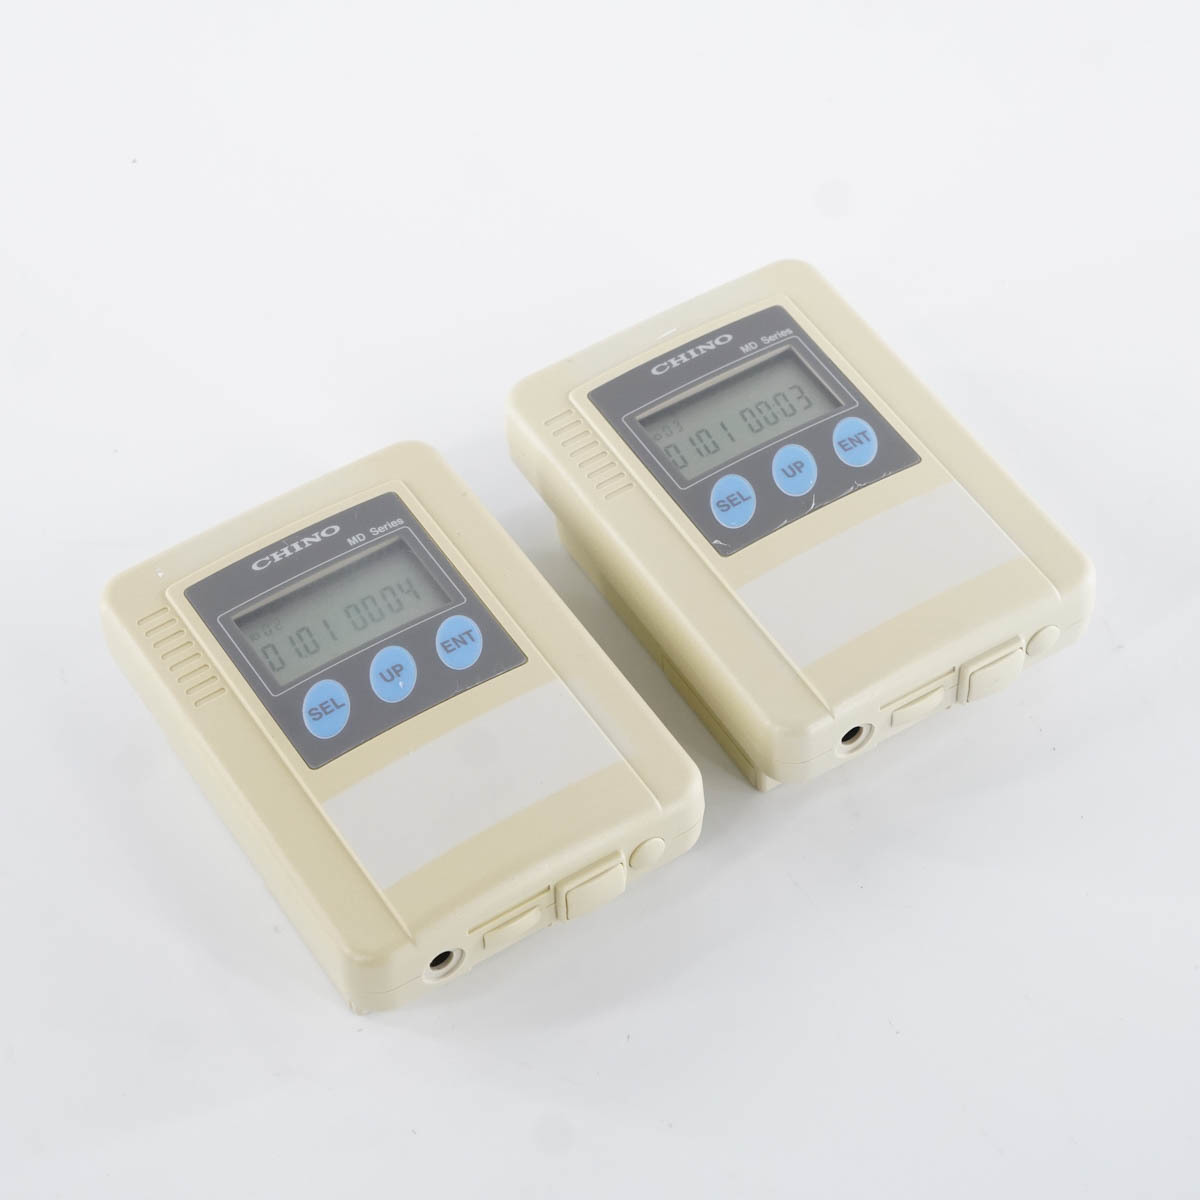 [DW] 2台セット MD-C01 CHINO チノー 無線温度・湿度ロガー 中継器[04689-0010]